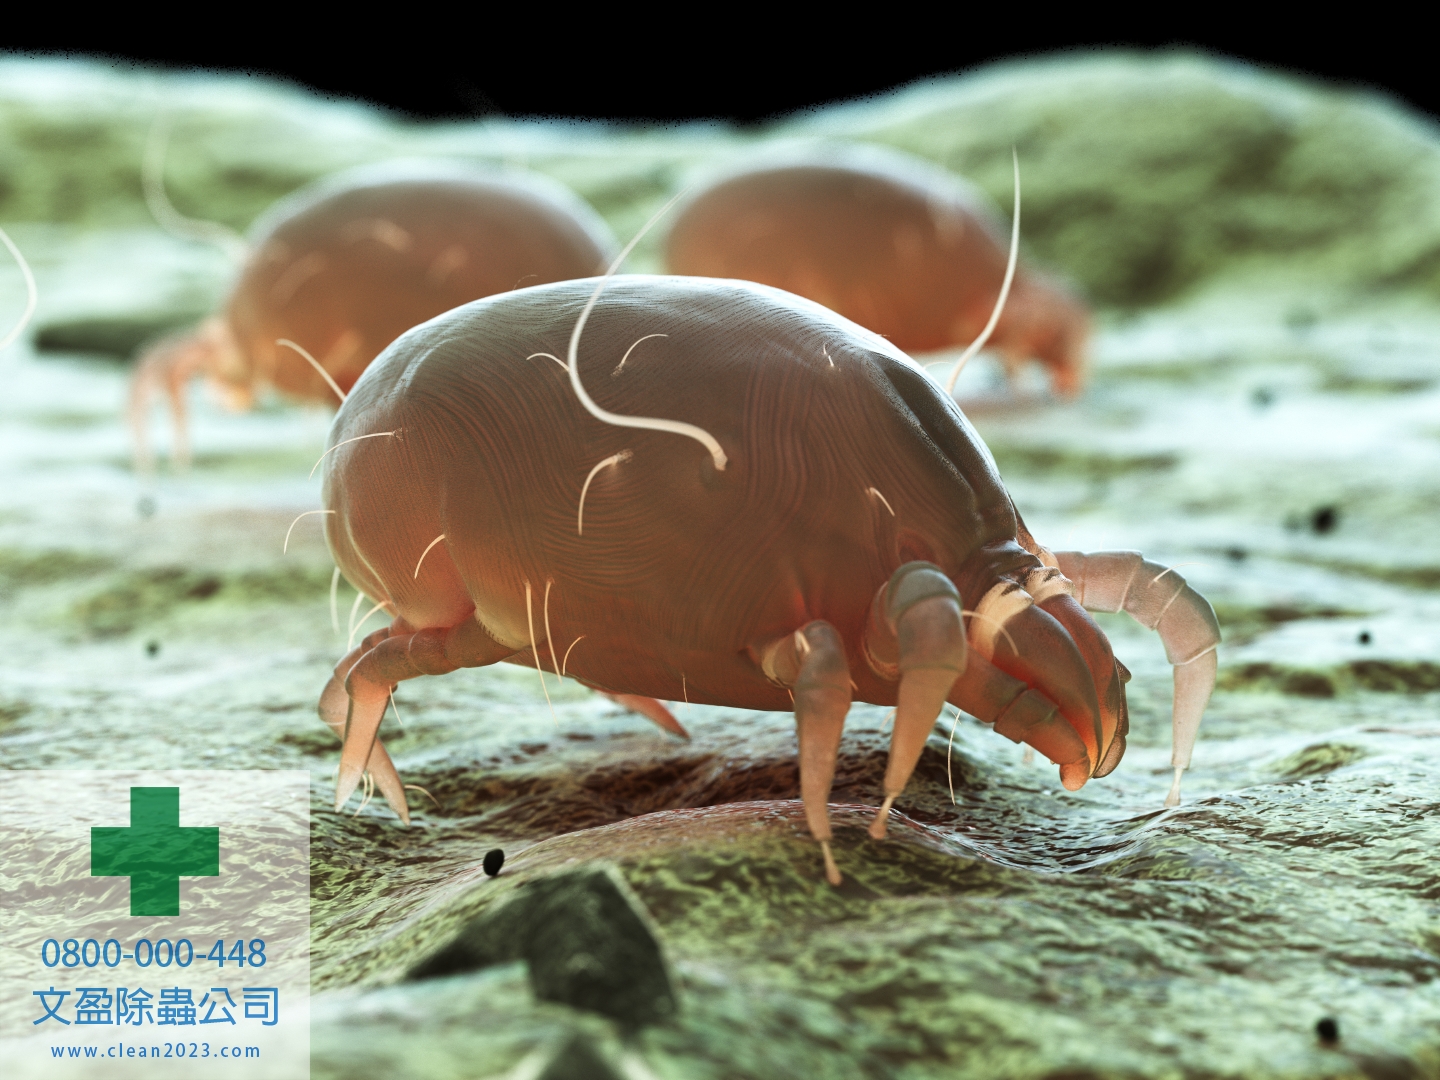 清潔推薦 - 清潔公司台北 - 居家清潔公司 - 除蟑螂、除螞蟻、除老鼠、除跳蚤、除蚊子、防治蛀蟲 011.jpg